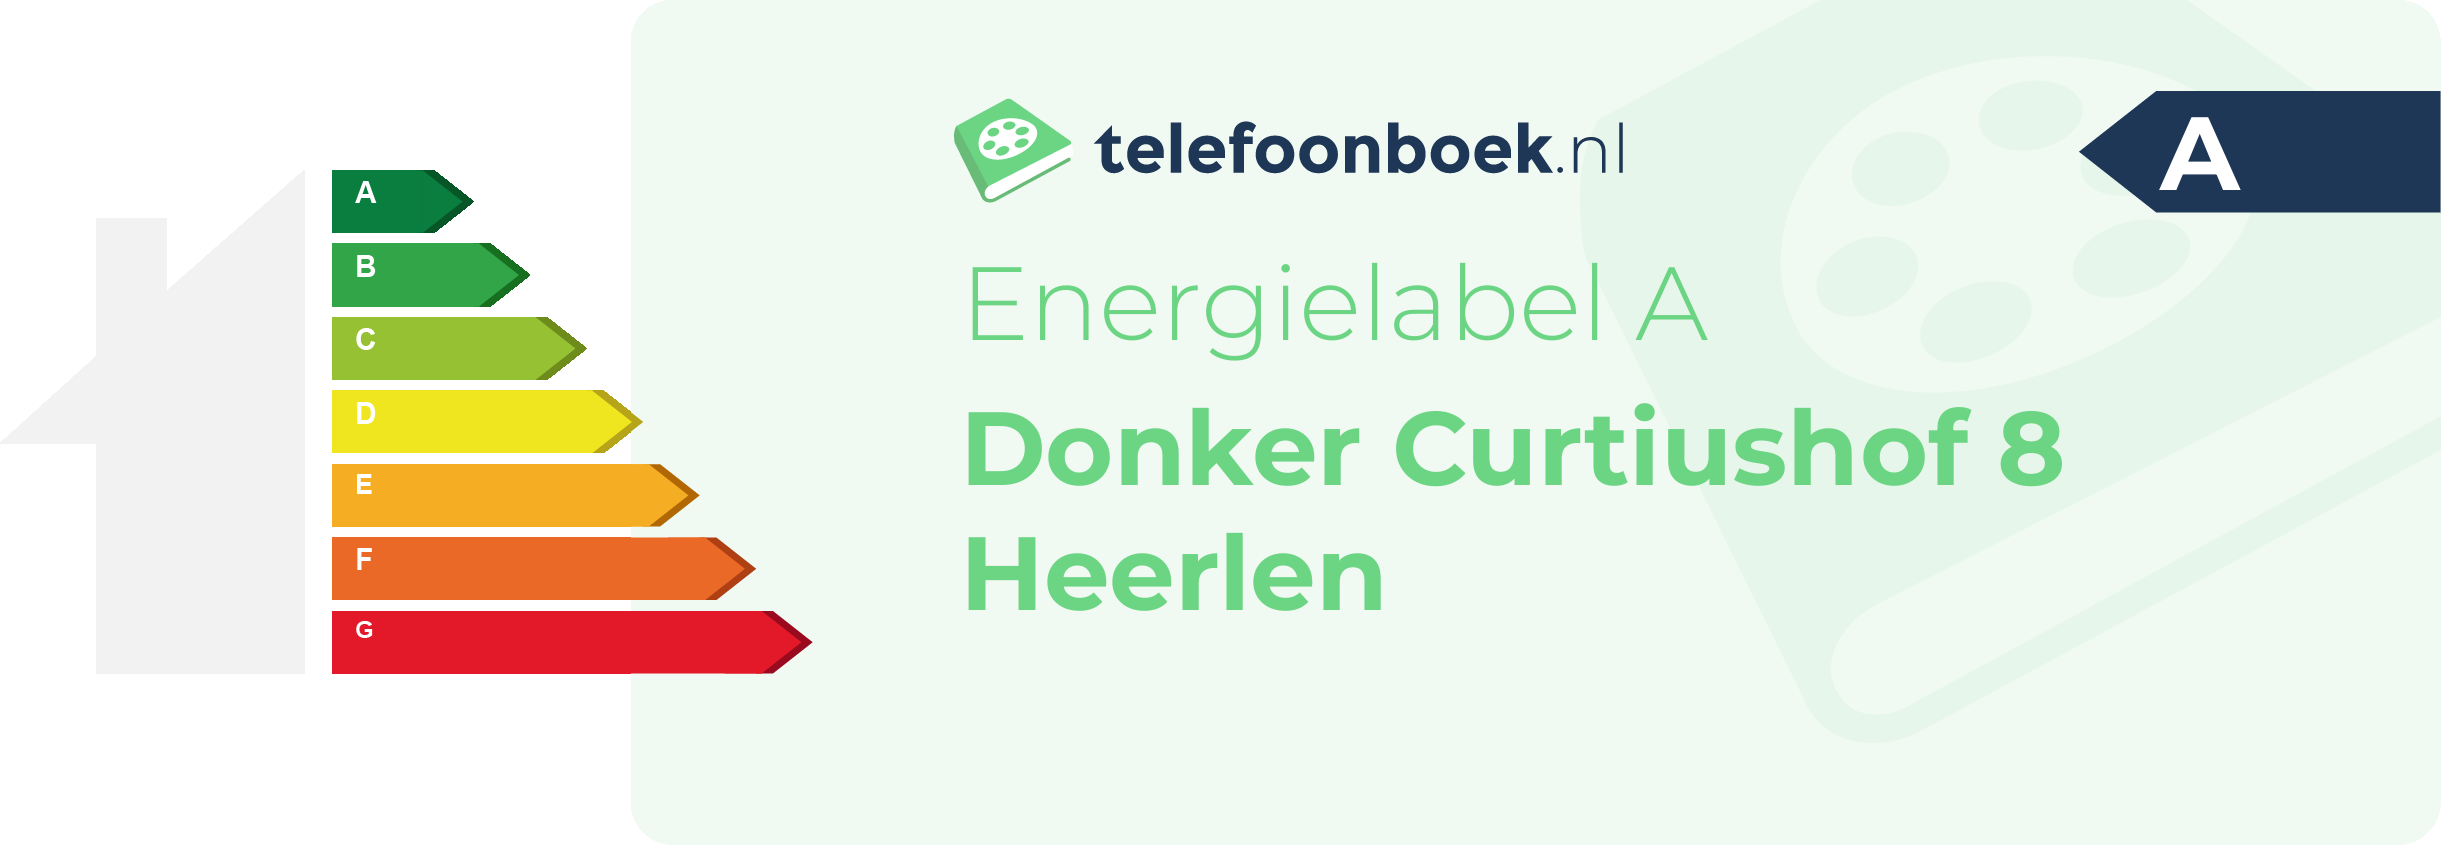 Energielabel Donker Curtiushof 8 Heerlen